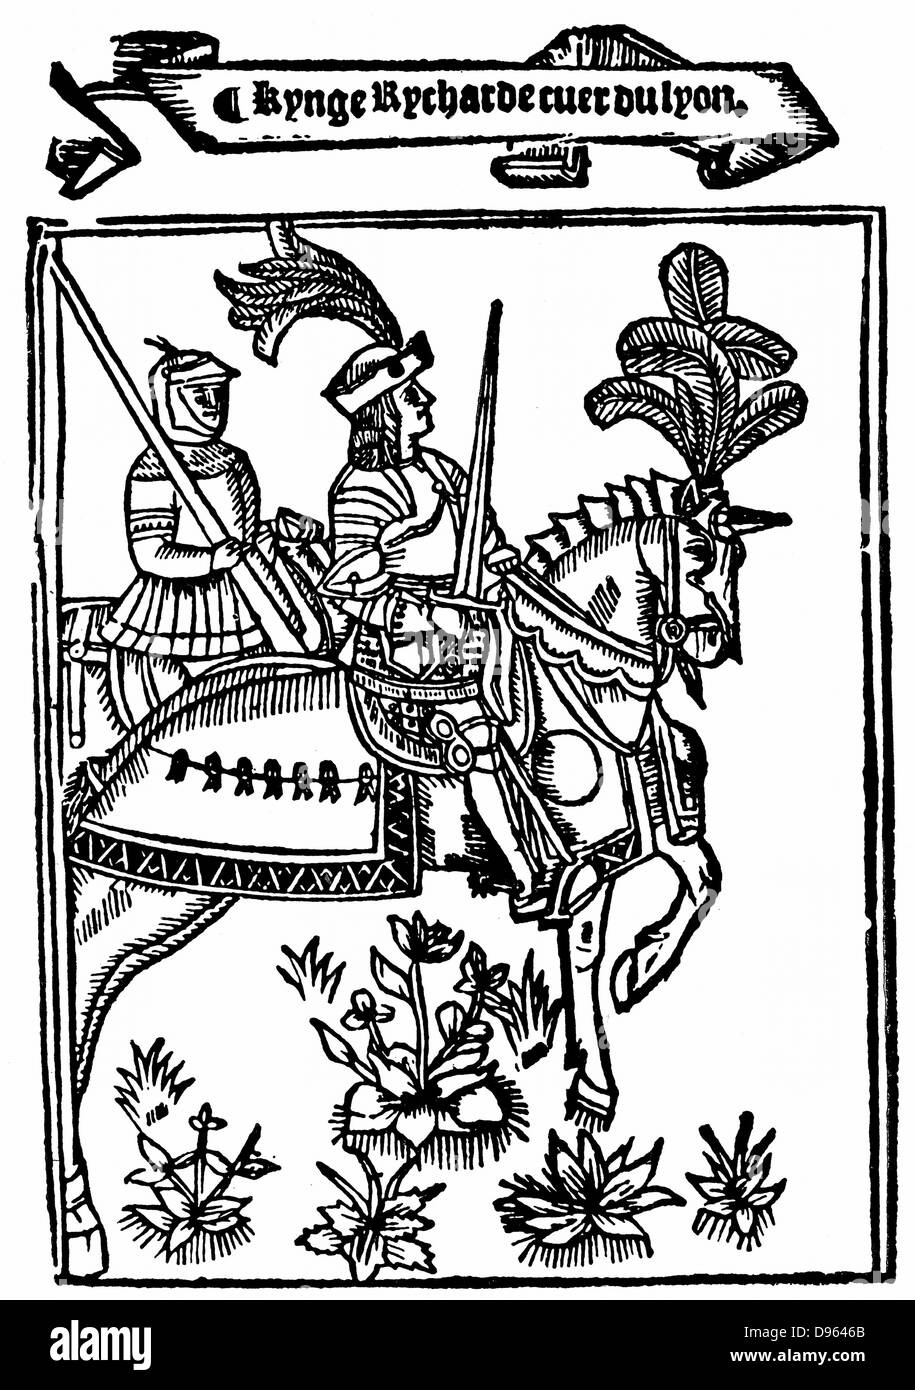 Richard I (1157-99) Coeur de Lion (Cuor di Leone), re d'Inghilterra dal 1189. Dal romanticismo metrica 'Richard Coeur de Lion' stampati da Wynkyn de Worde (dc1535), Londra, 1528. Xilografia mostra Richard in armatura montato su caparisoned cavallo. Foto Stock